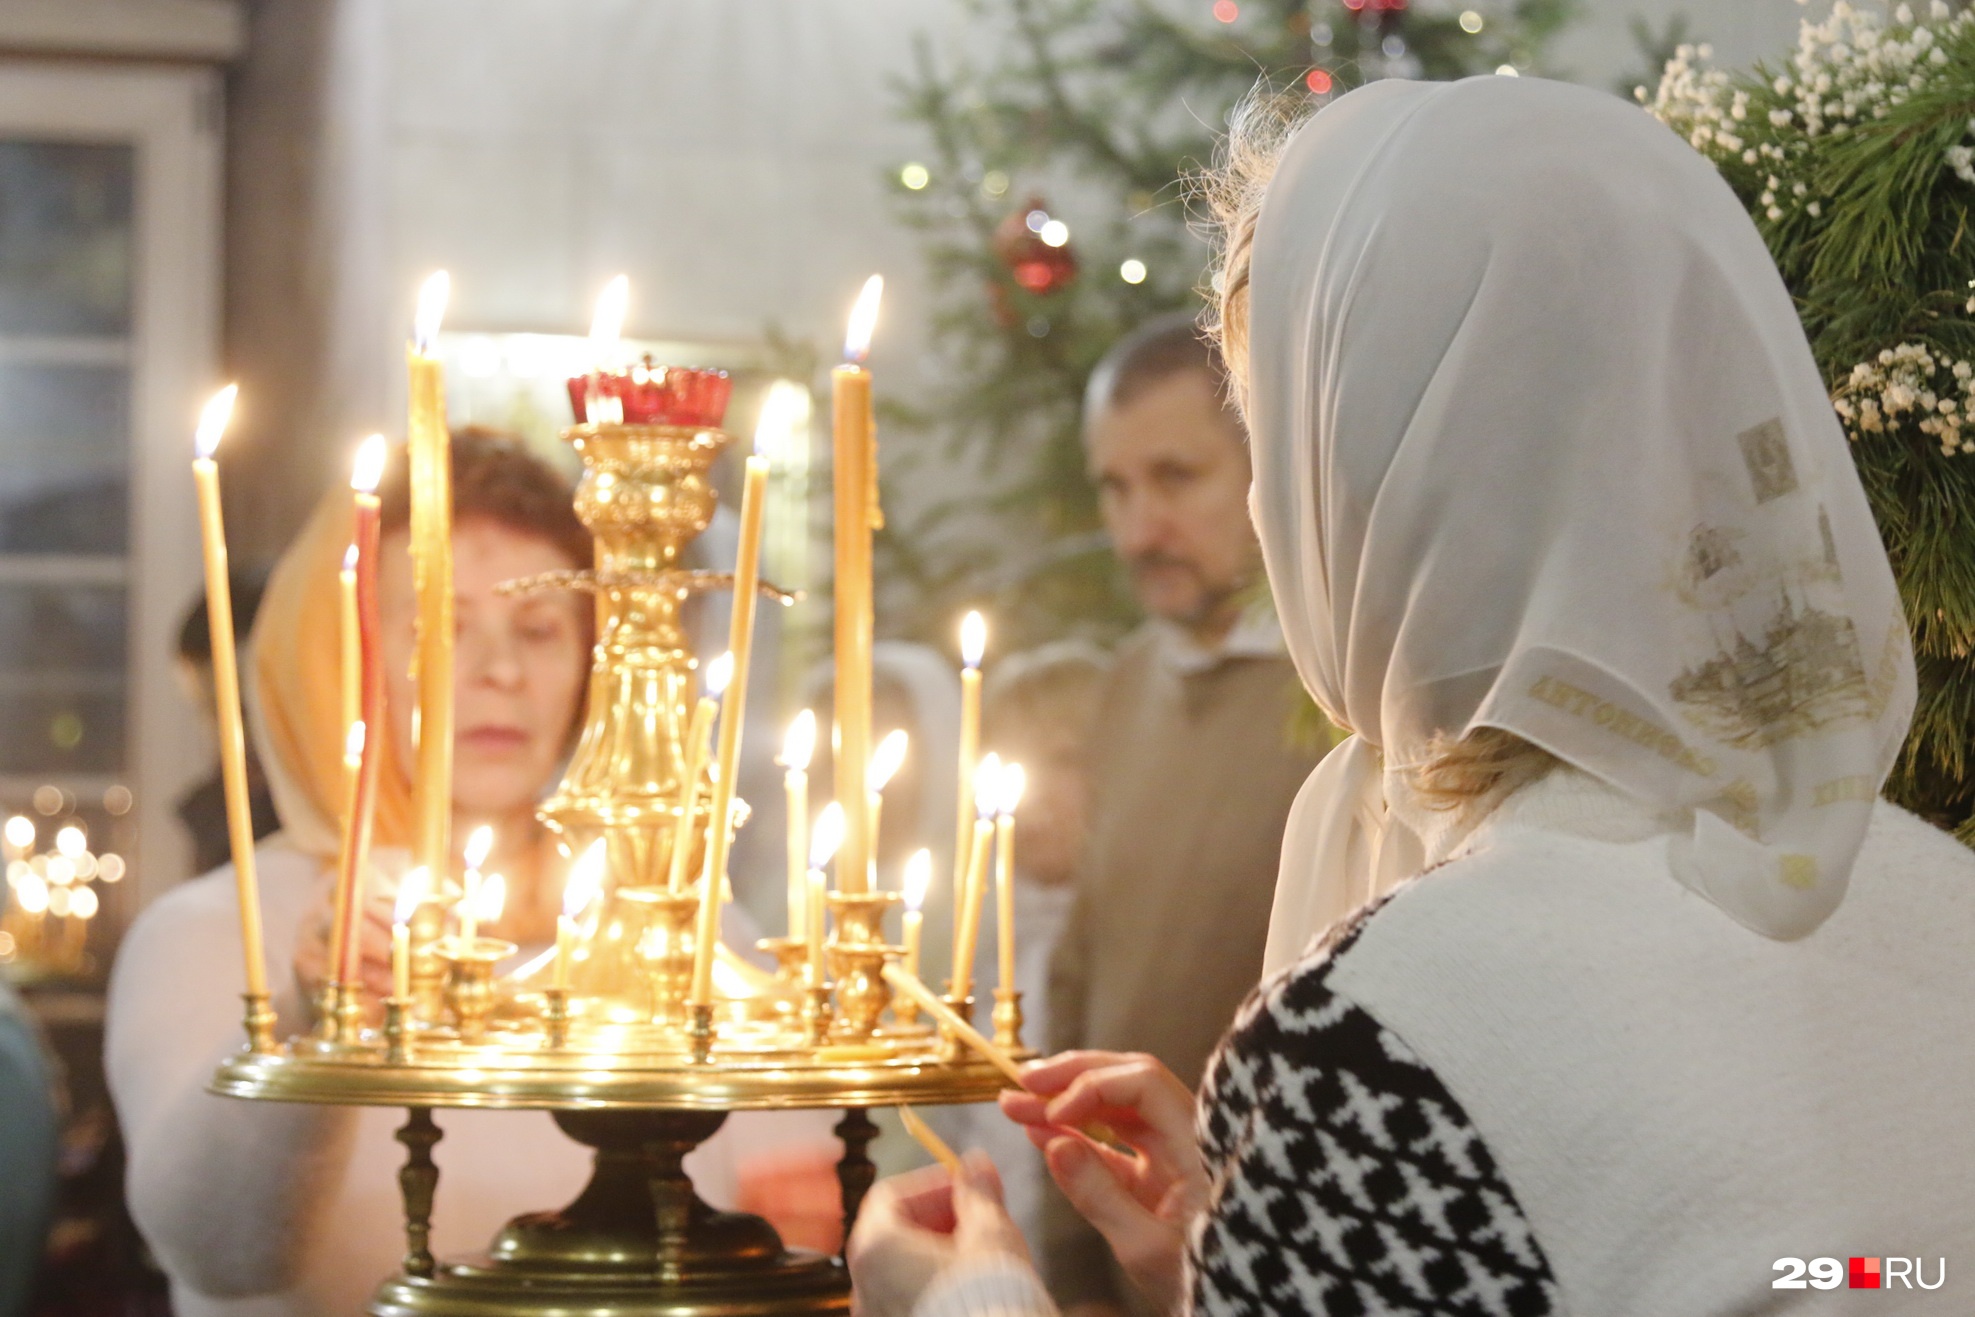 «Матерь всех праздников», — так говорят православные о Рождестве